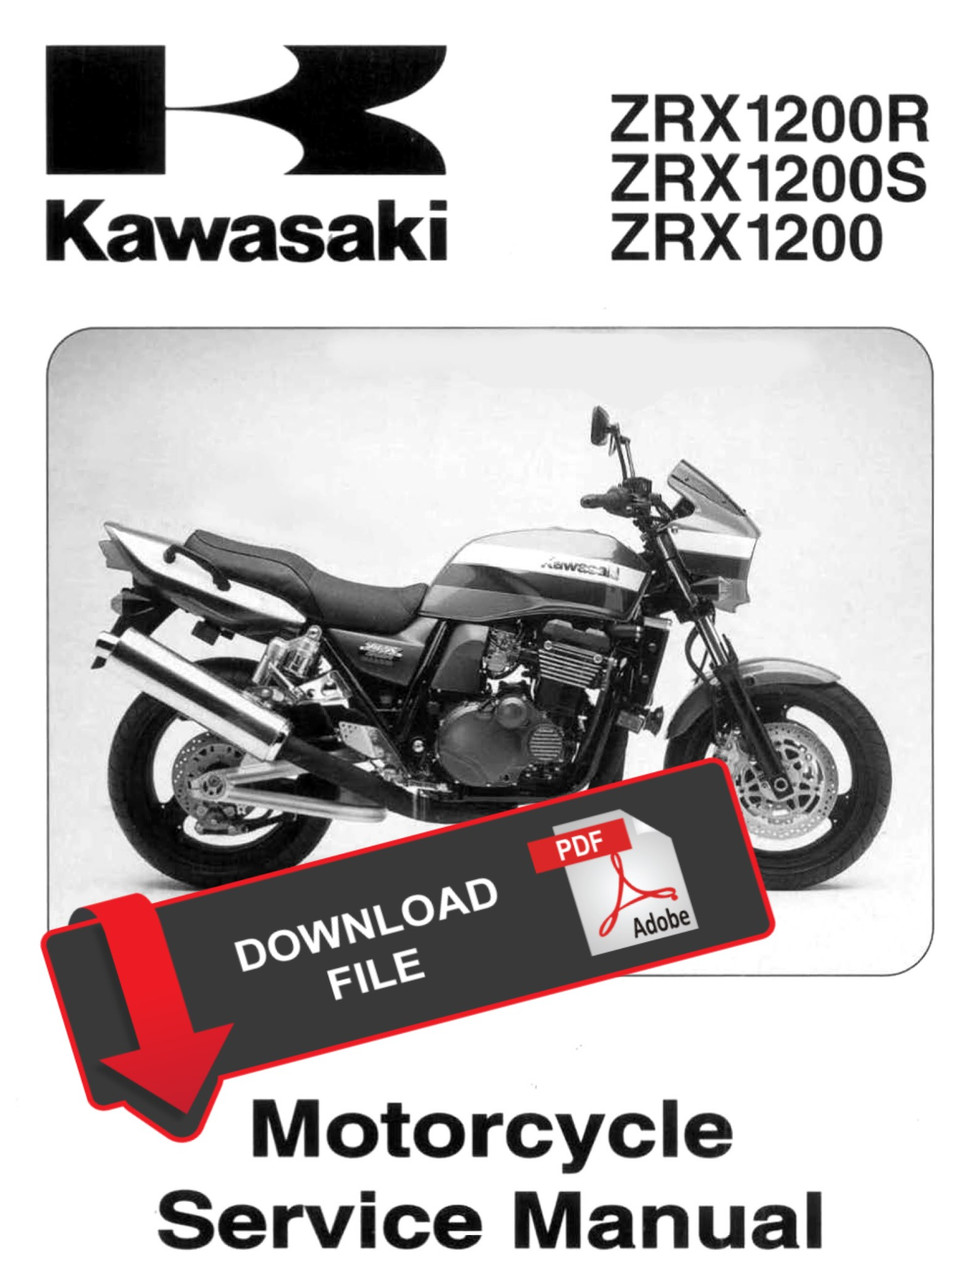 Kawasaki ZRX1200 サービスマニュアル | bumblebeebight.ca